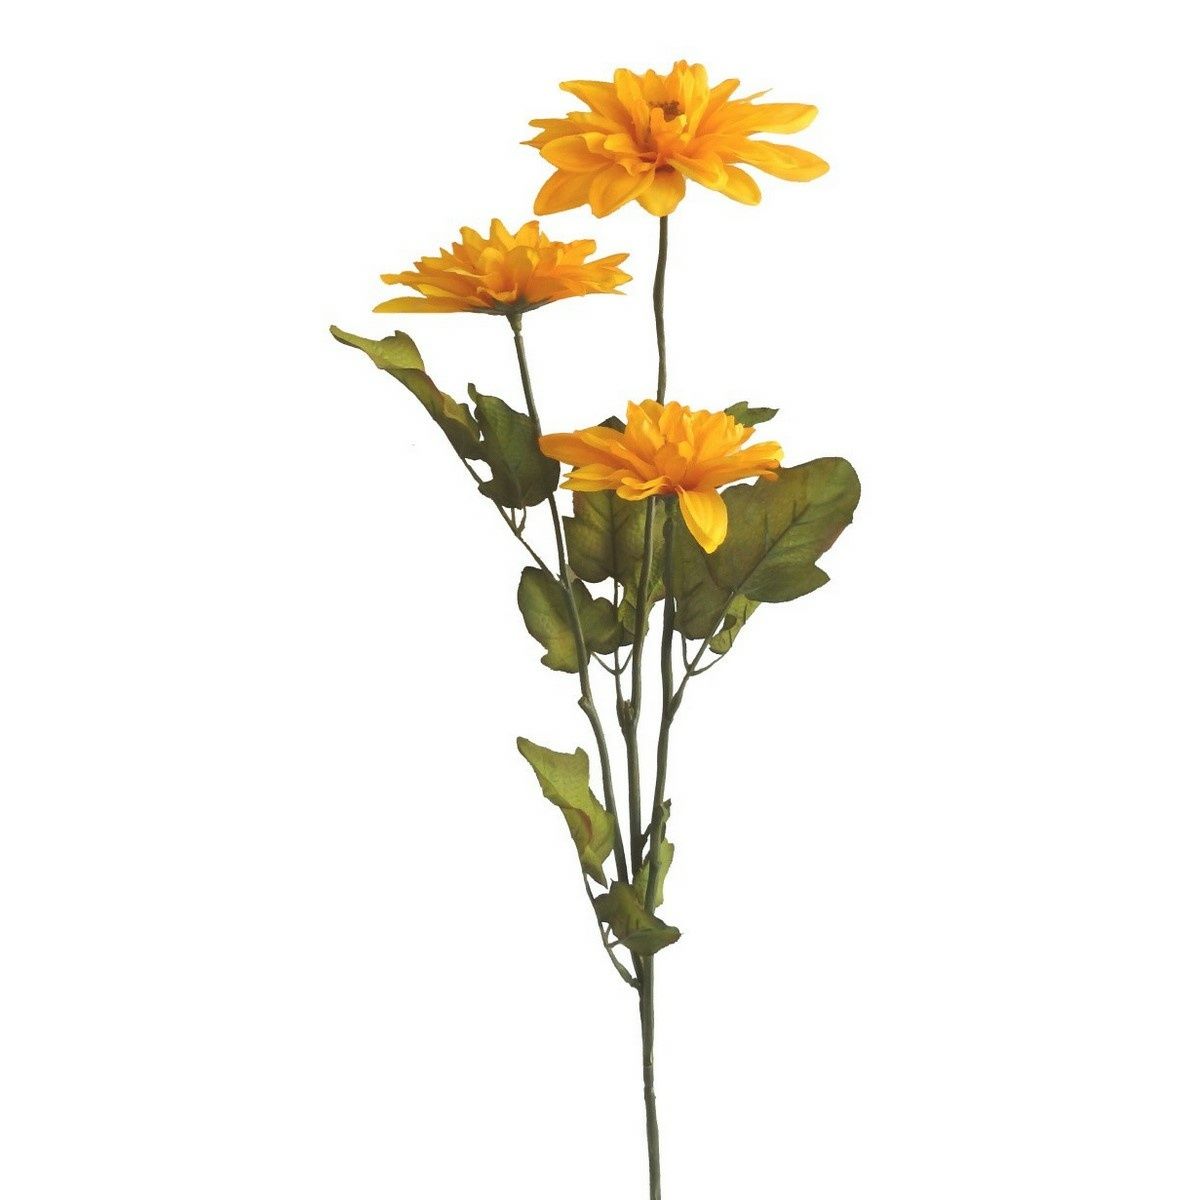 Umělá jiřina, 3 květy na stonku, v. 64 cm, žlutá - 4home.cz